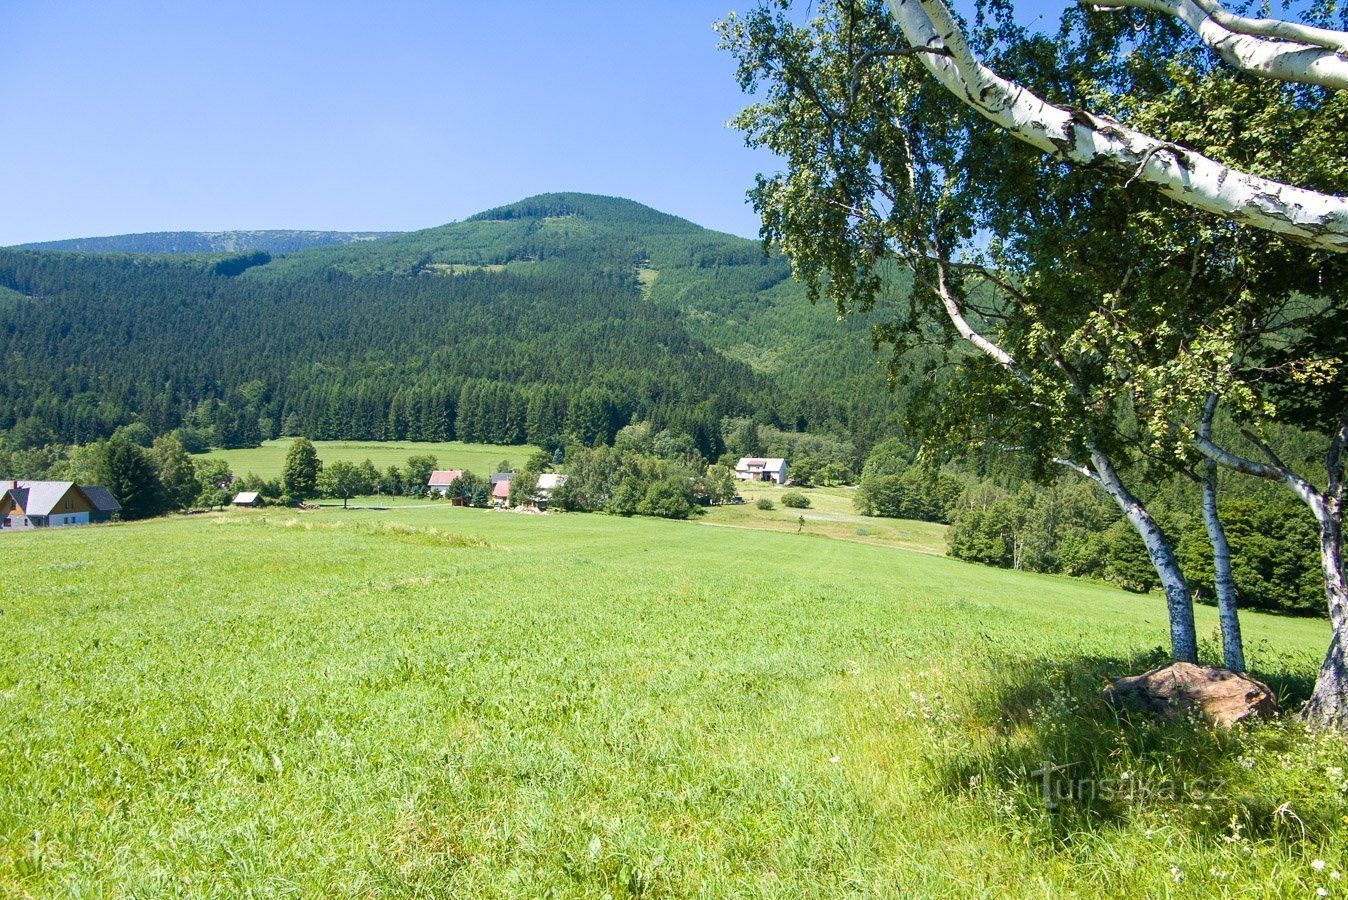 Točník en de enigszins verborgen Červená hora steken boven Filipovice uit